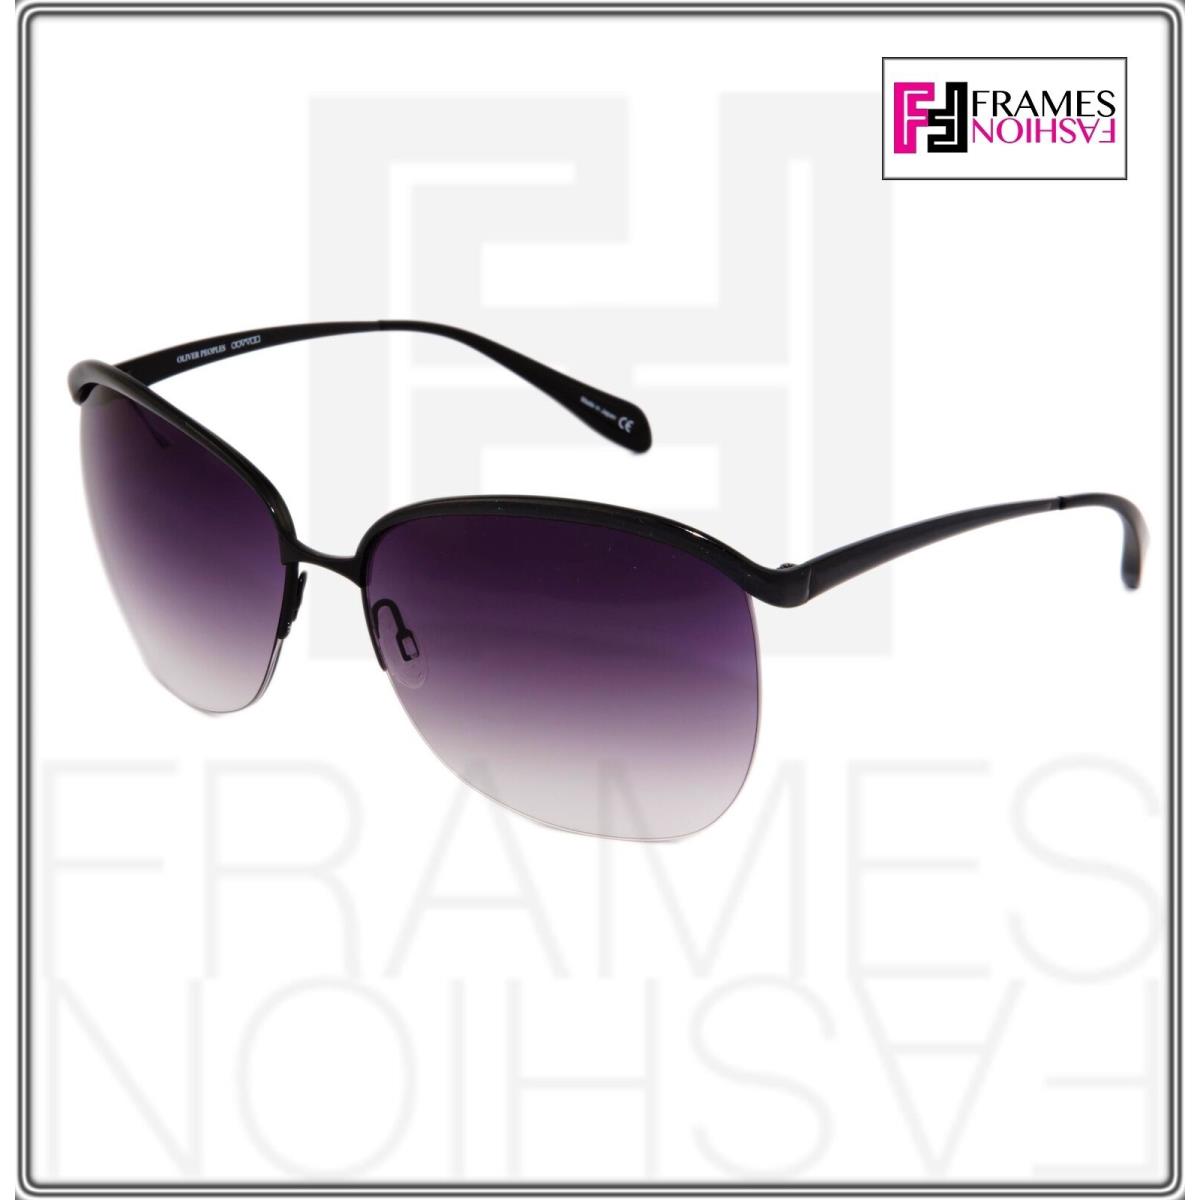 Oliver Peoples sunglasses  - Black Frame, Purple Lens 7